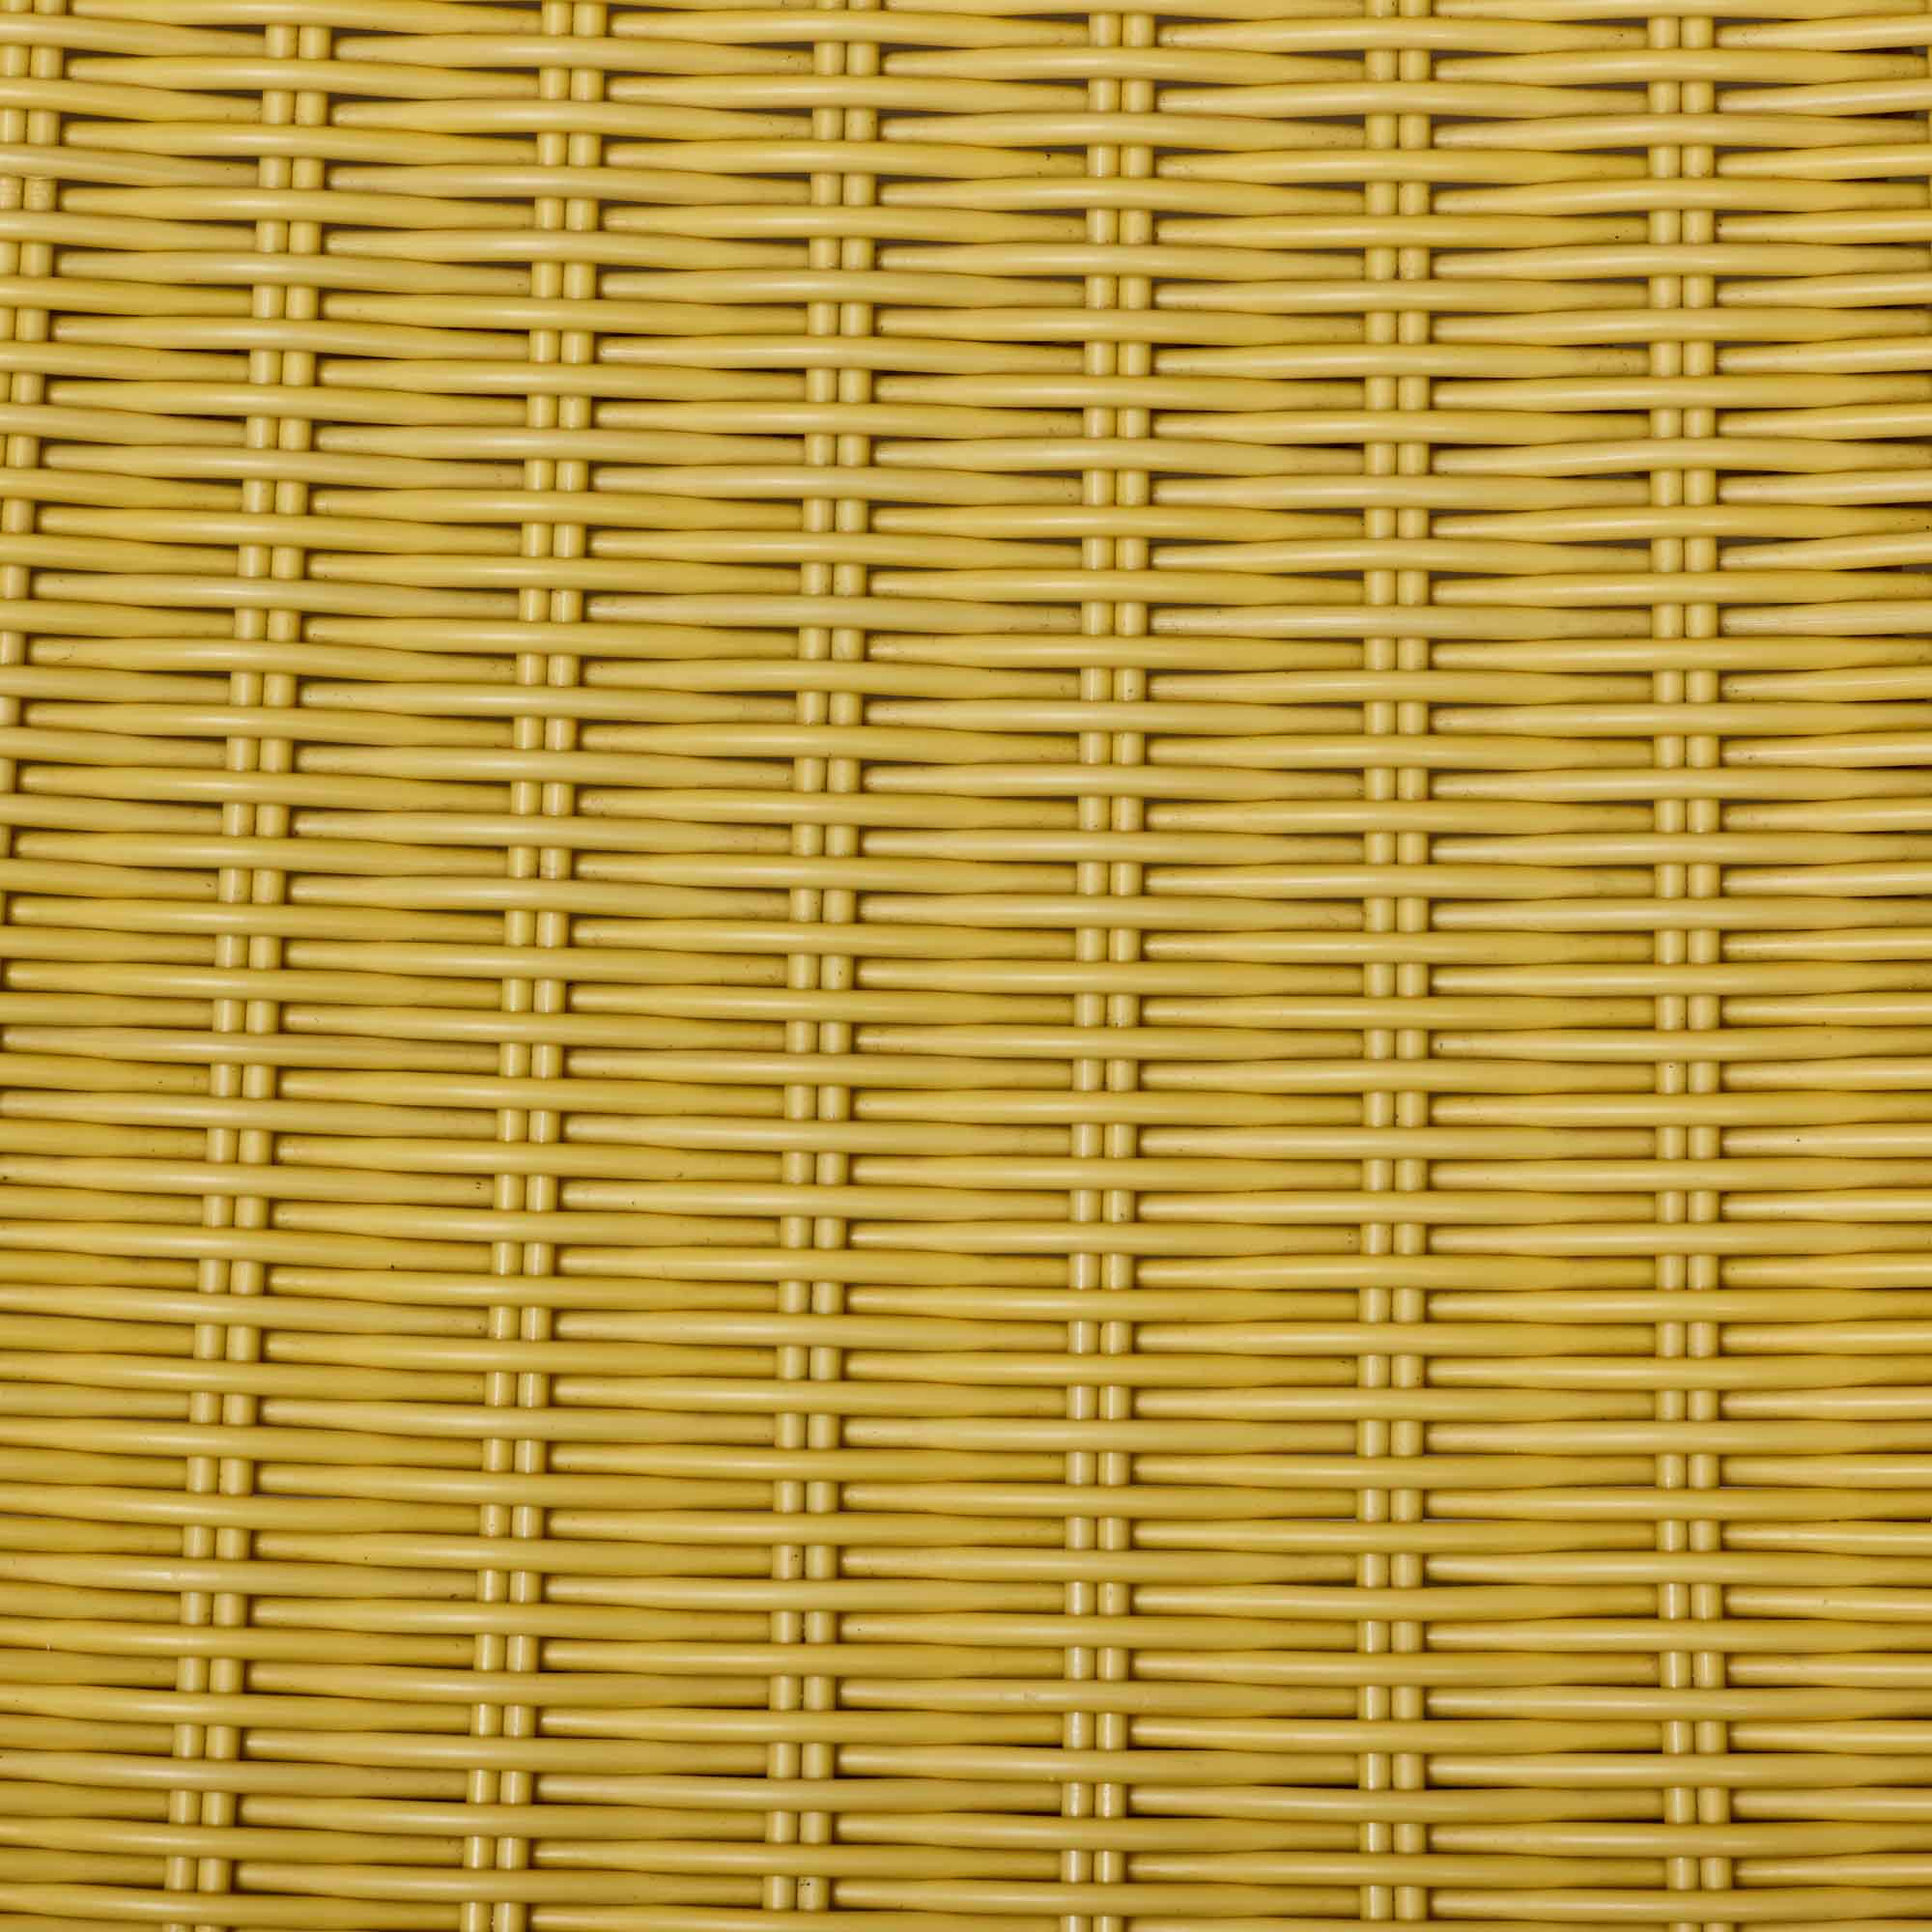 Capri Outdoor Chair Flaxen Yellow